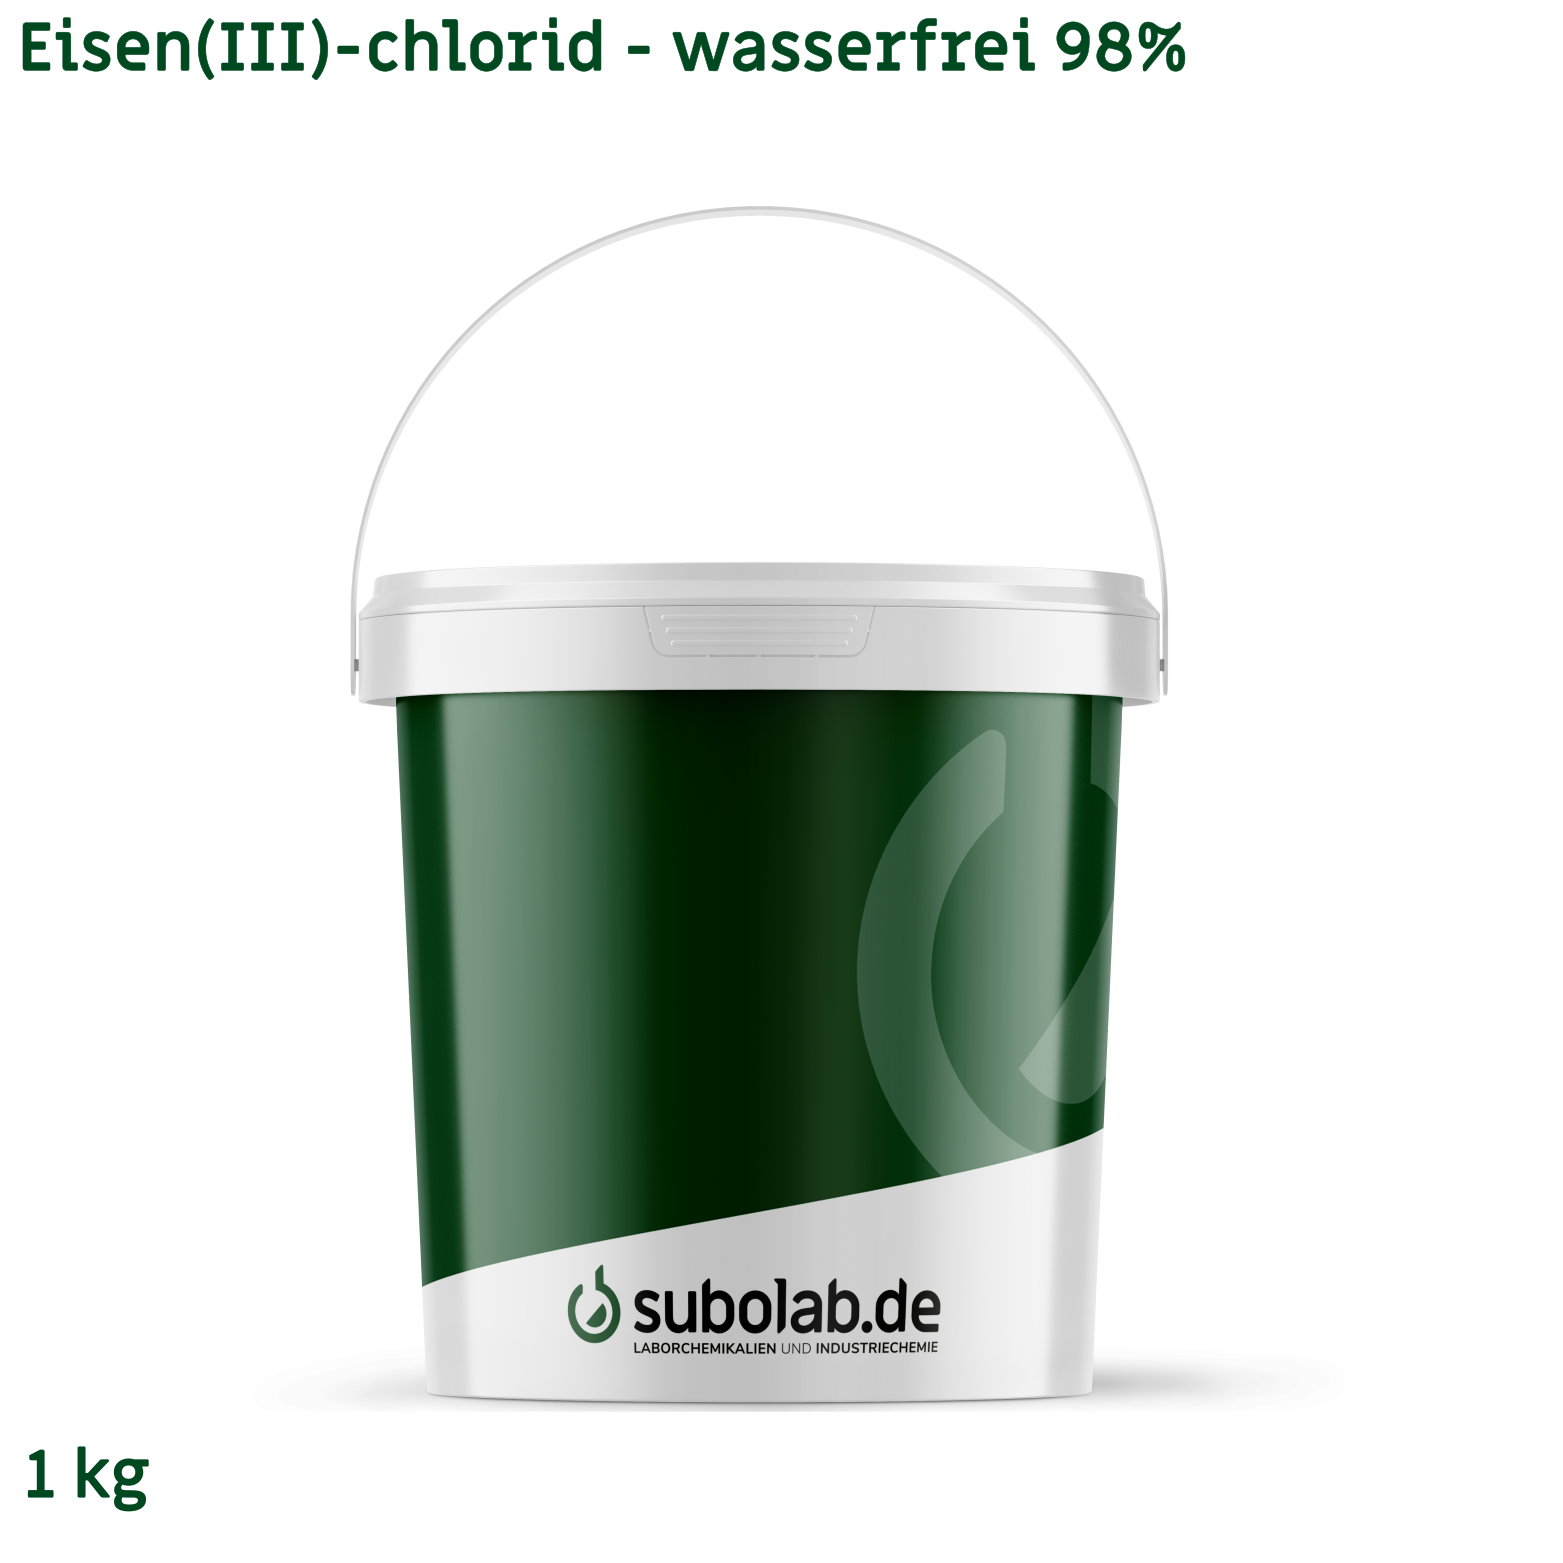 Bild von Eisen(III)-chlorid - wasserfrei 98% (1 kg)